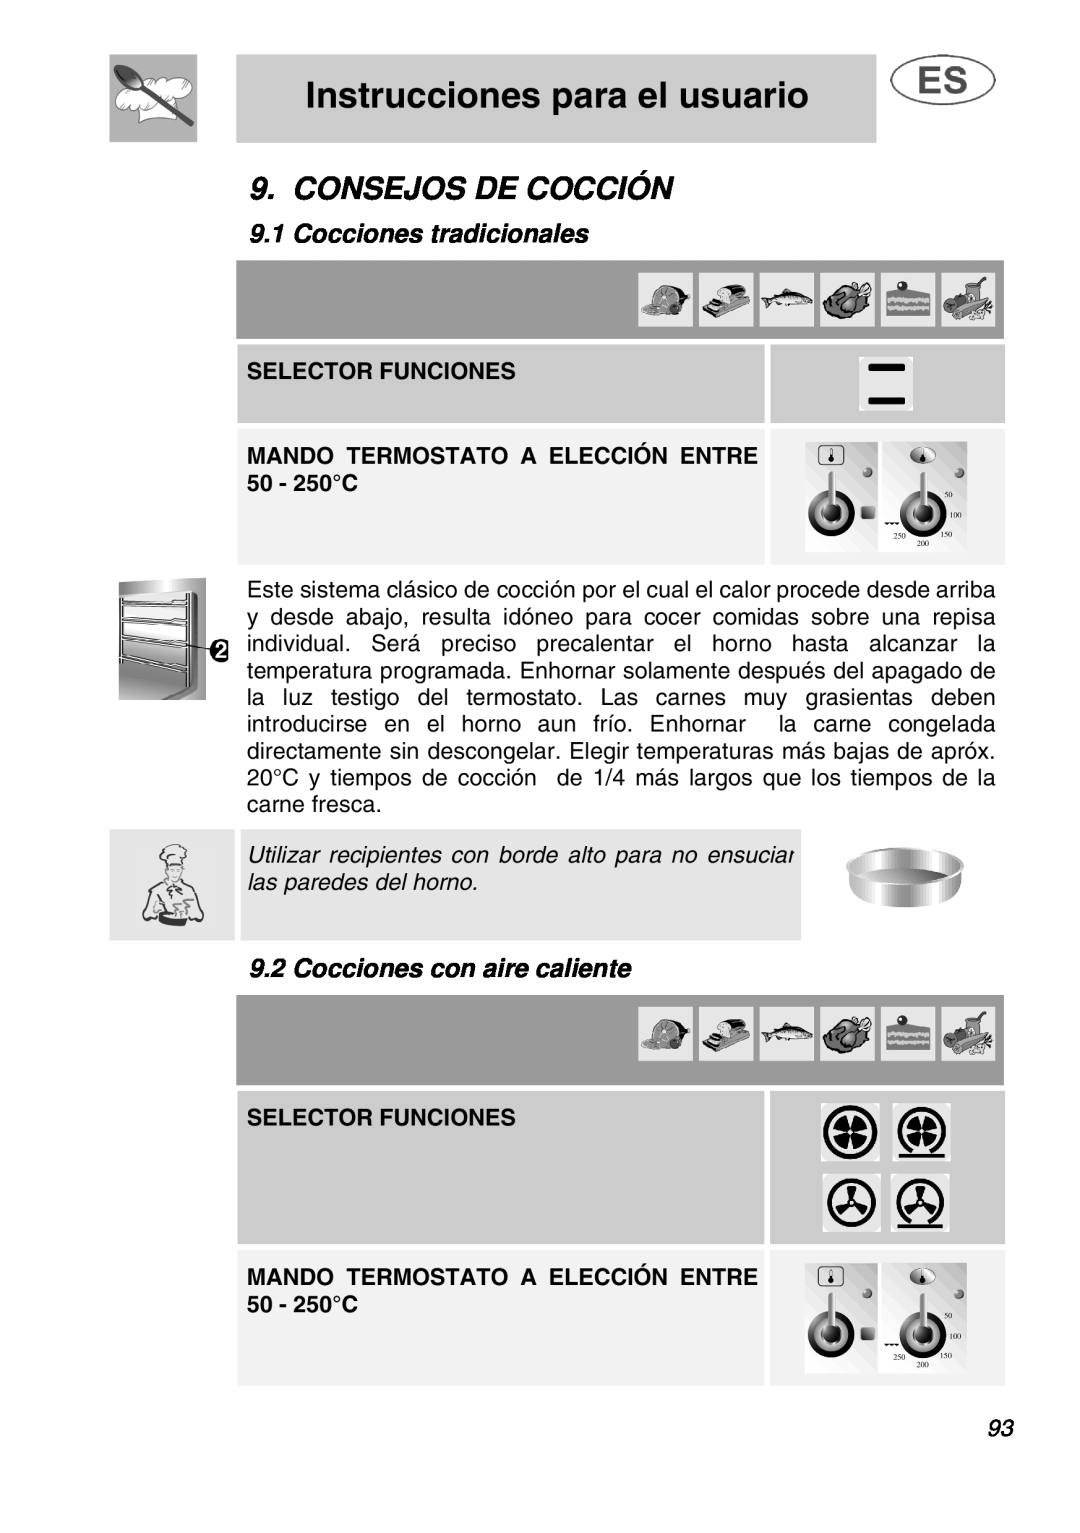 Smeg A1.1K instruction manual Consejos De Cocción, Cocciones tradicionales, Cocciones con aire caliente, Selector Funciones 